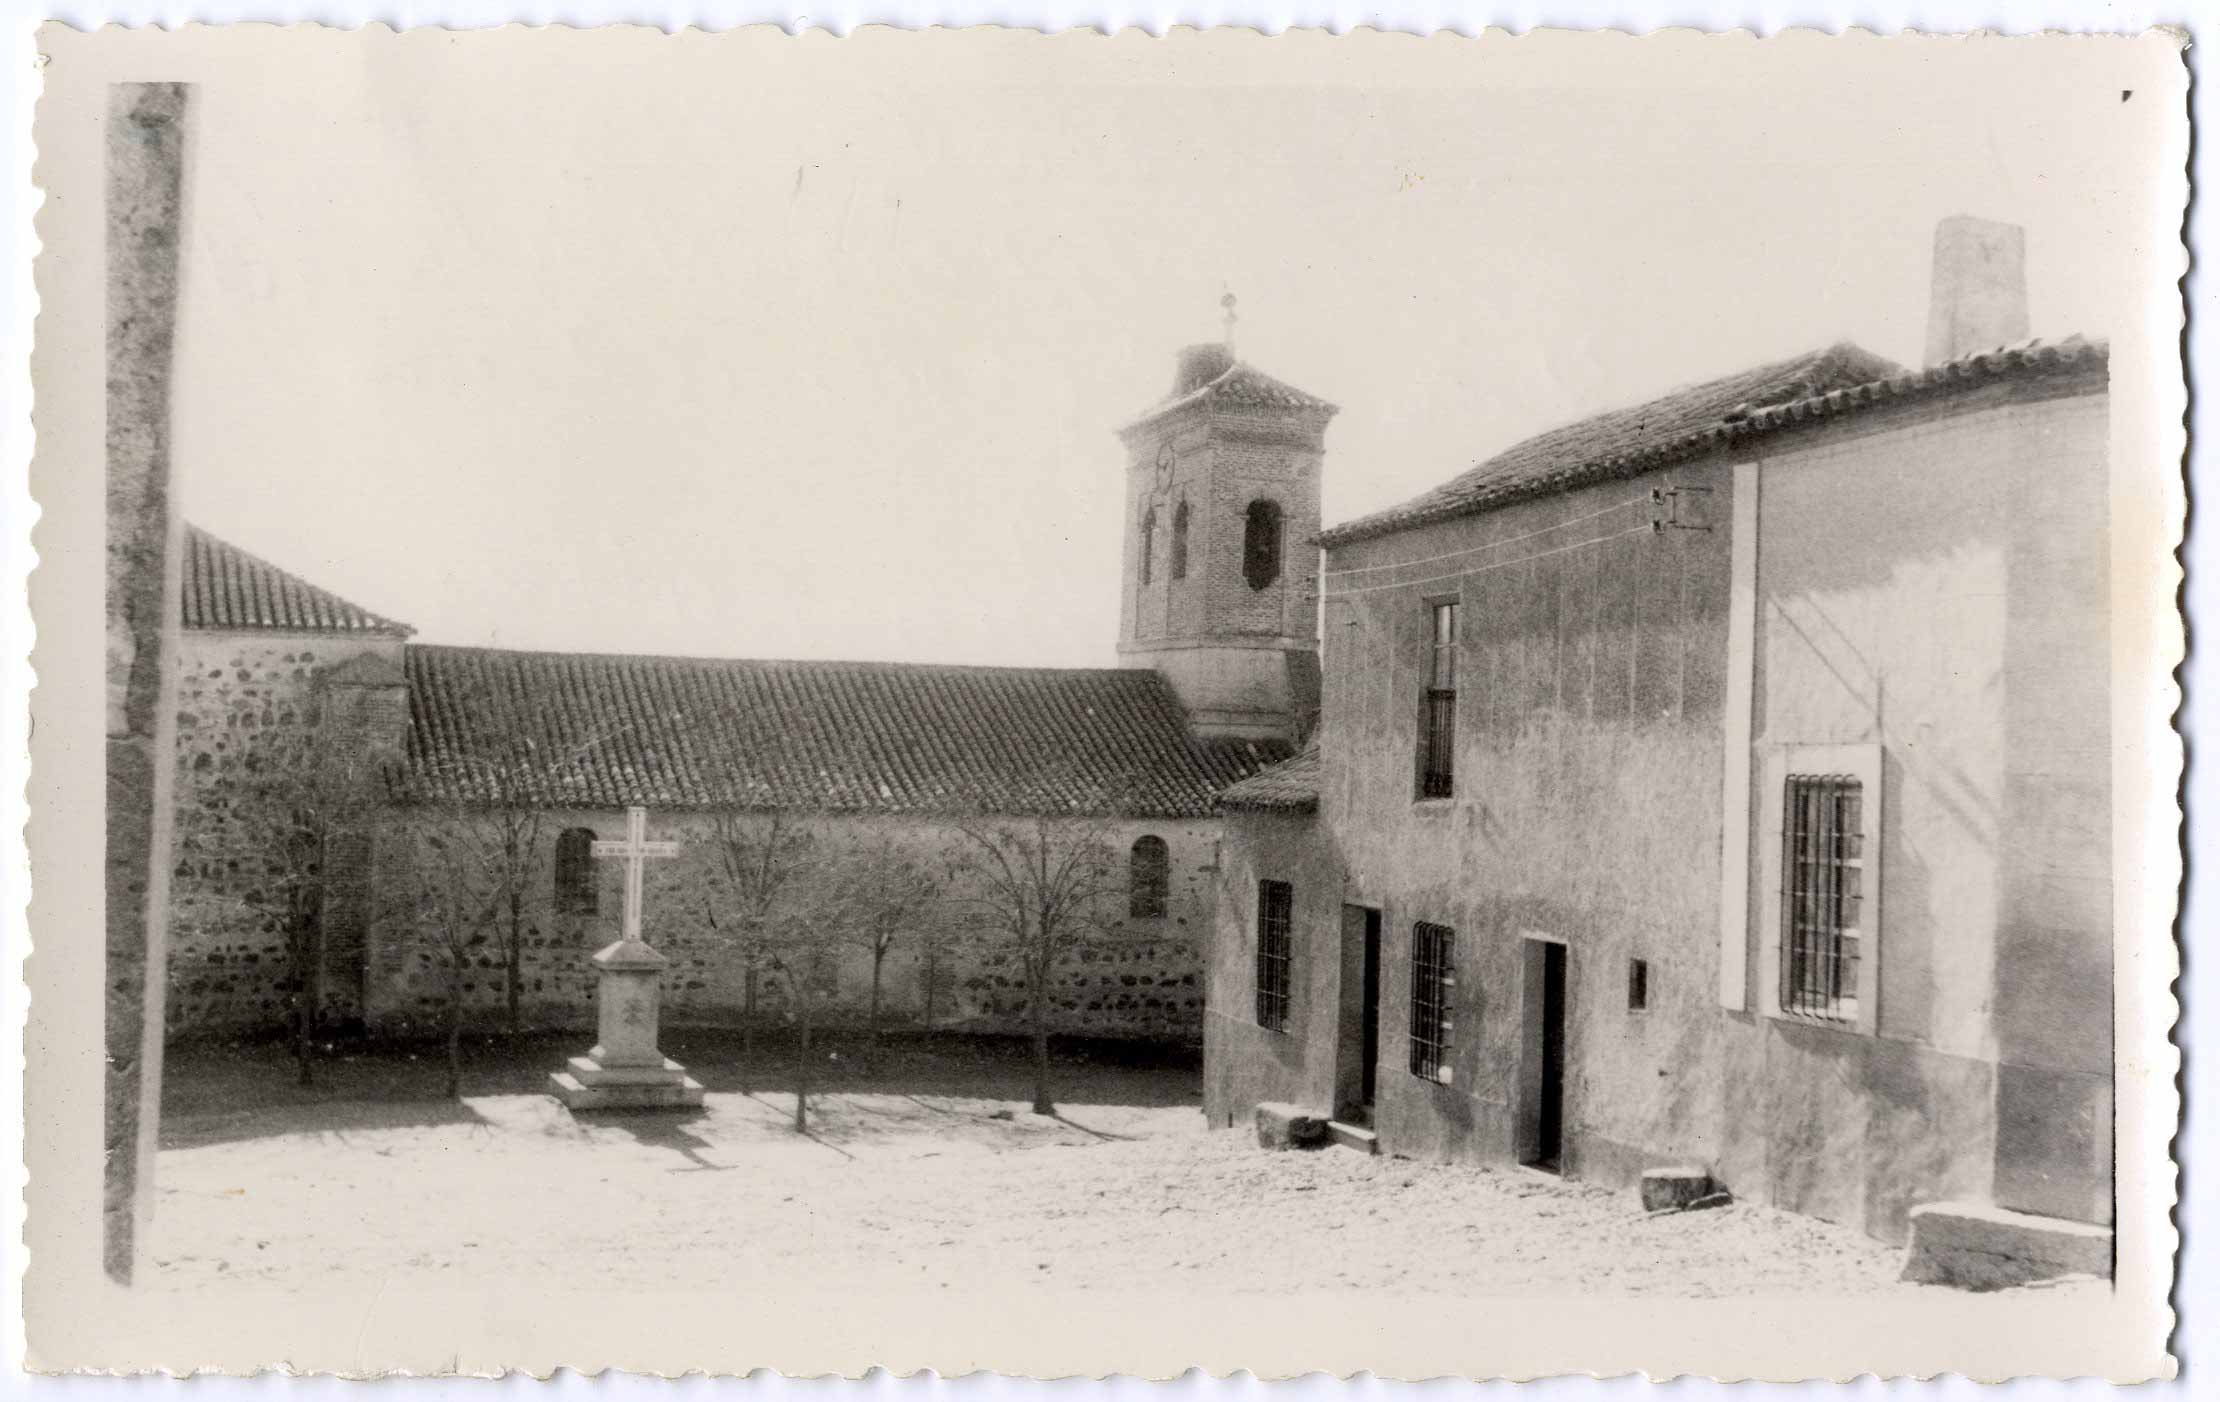 Marjaliza. Fachada lateral de la iglesia. 1959 (P-371)